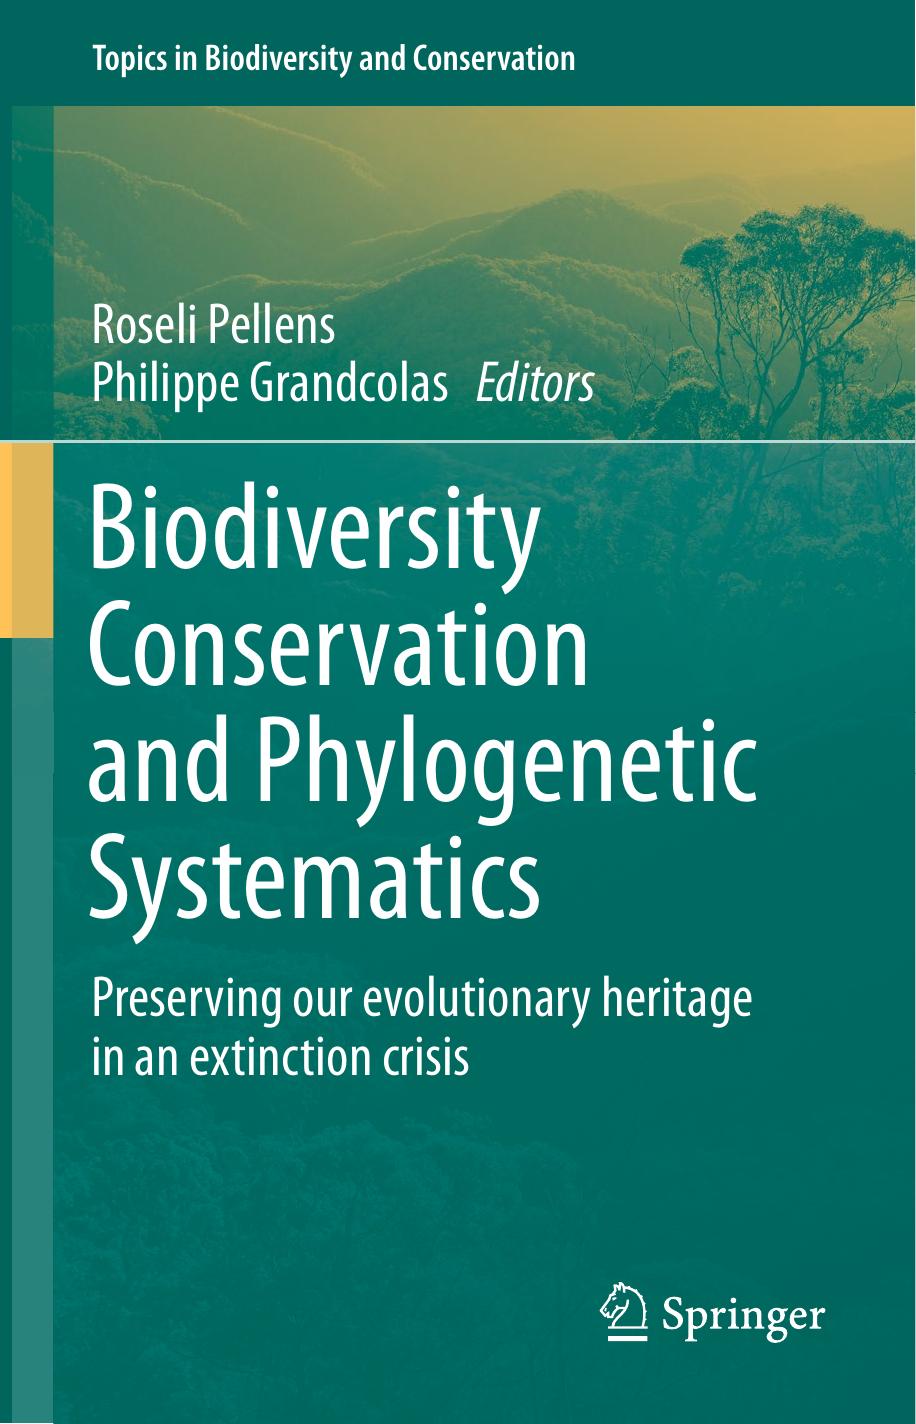 maycolladoetal2016 conservationareas pellensandgrandcolasbook  2013